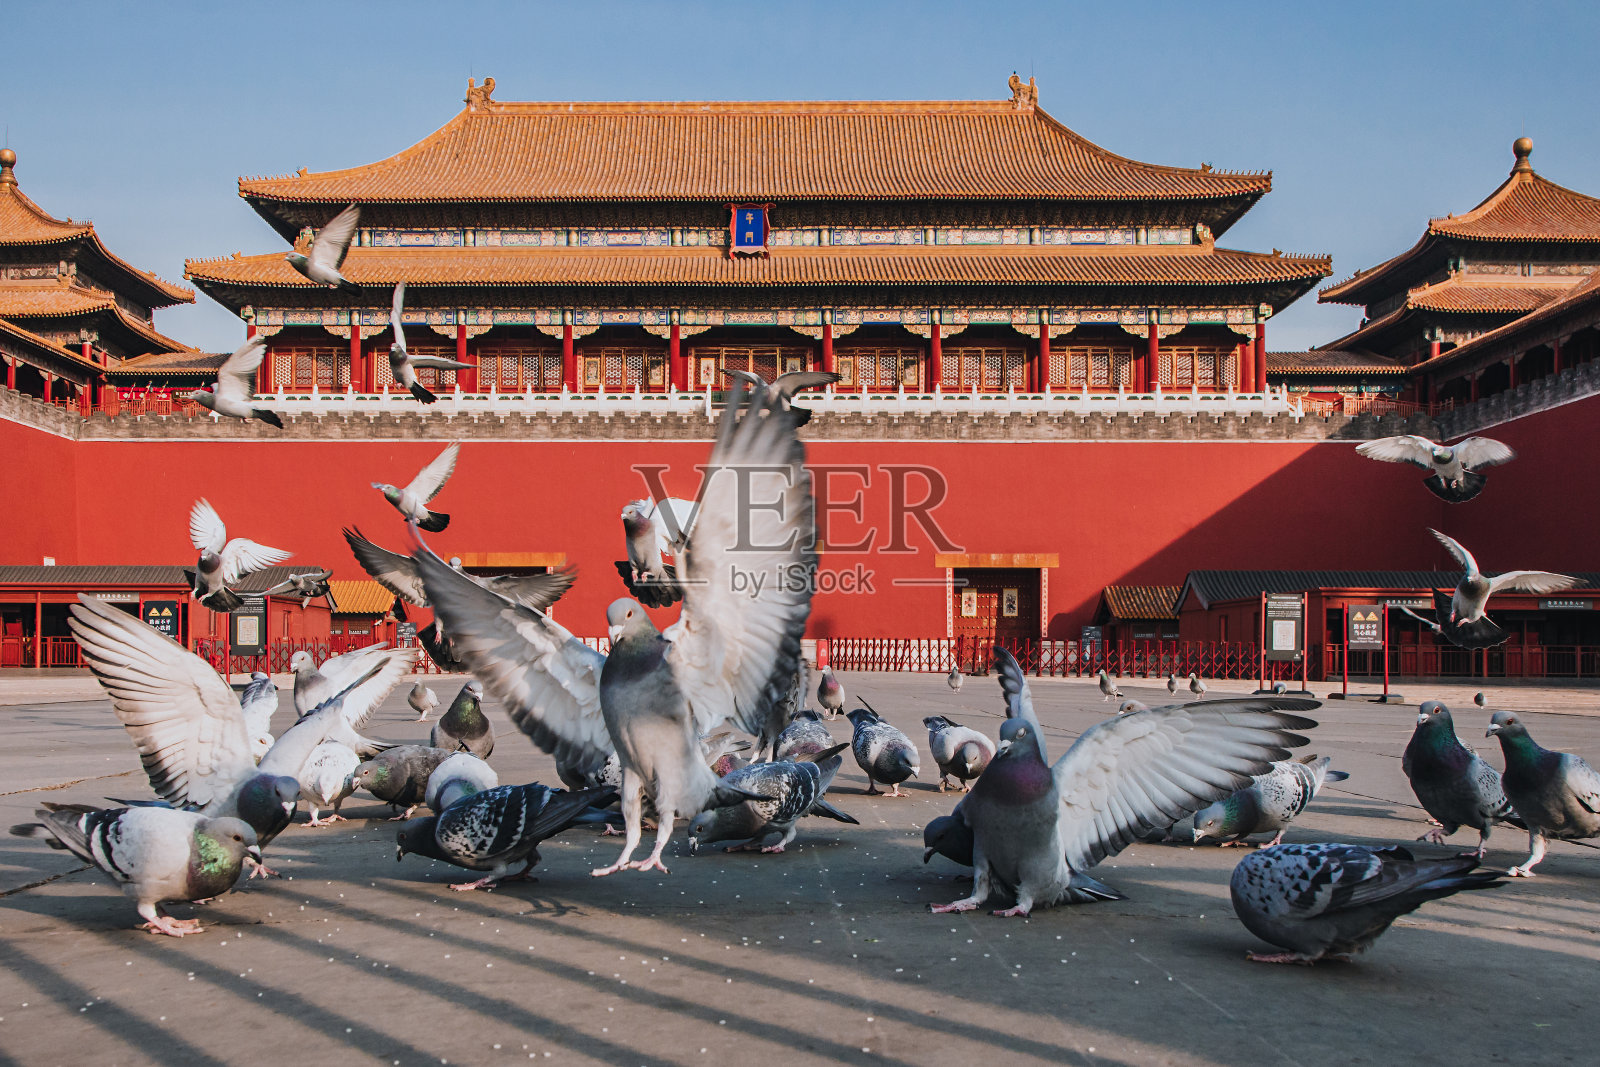 中国北京故宫广场上的鸽子。鸽子在北京紫禁城红墙前飞翔。图中牌匾的中文翻译:午门。照片摄影图片